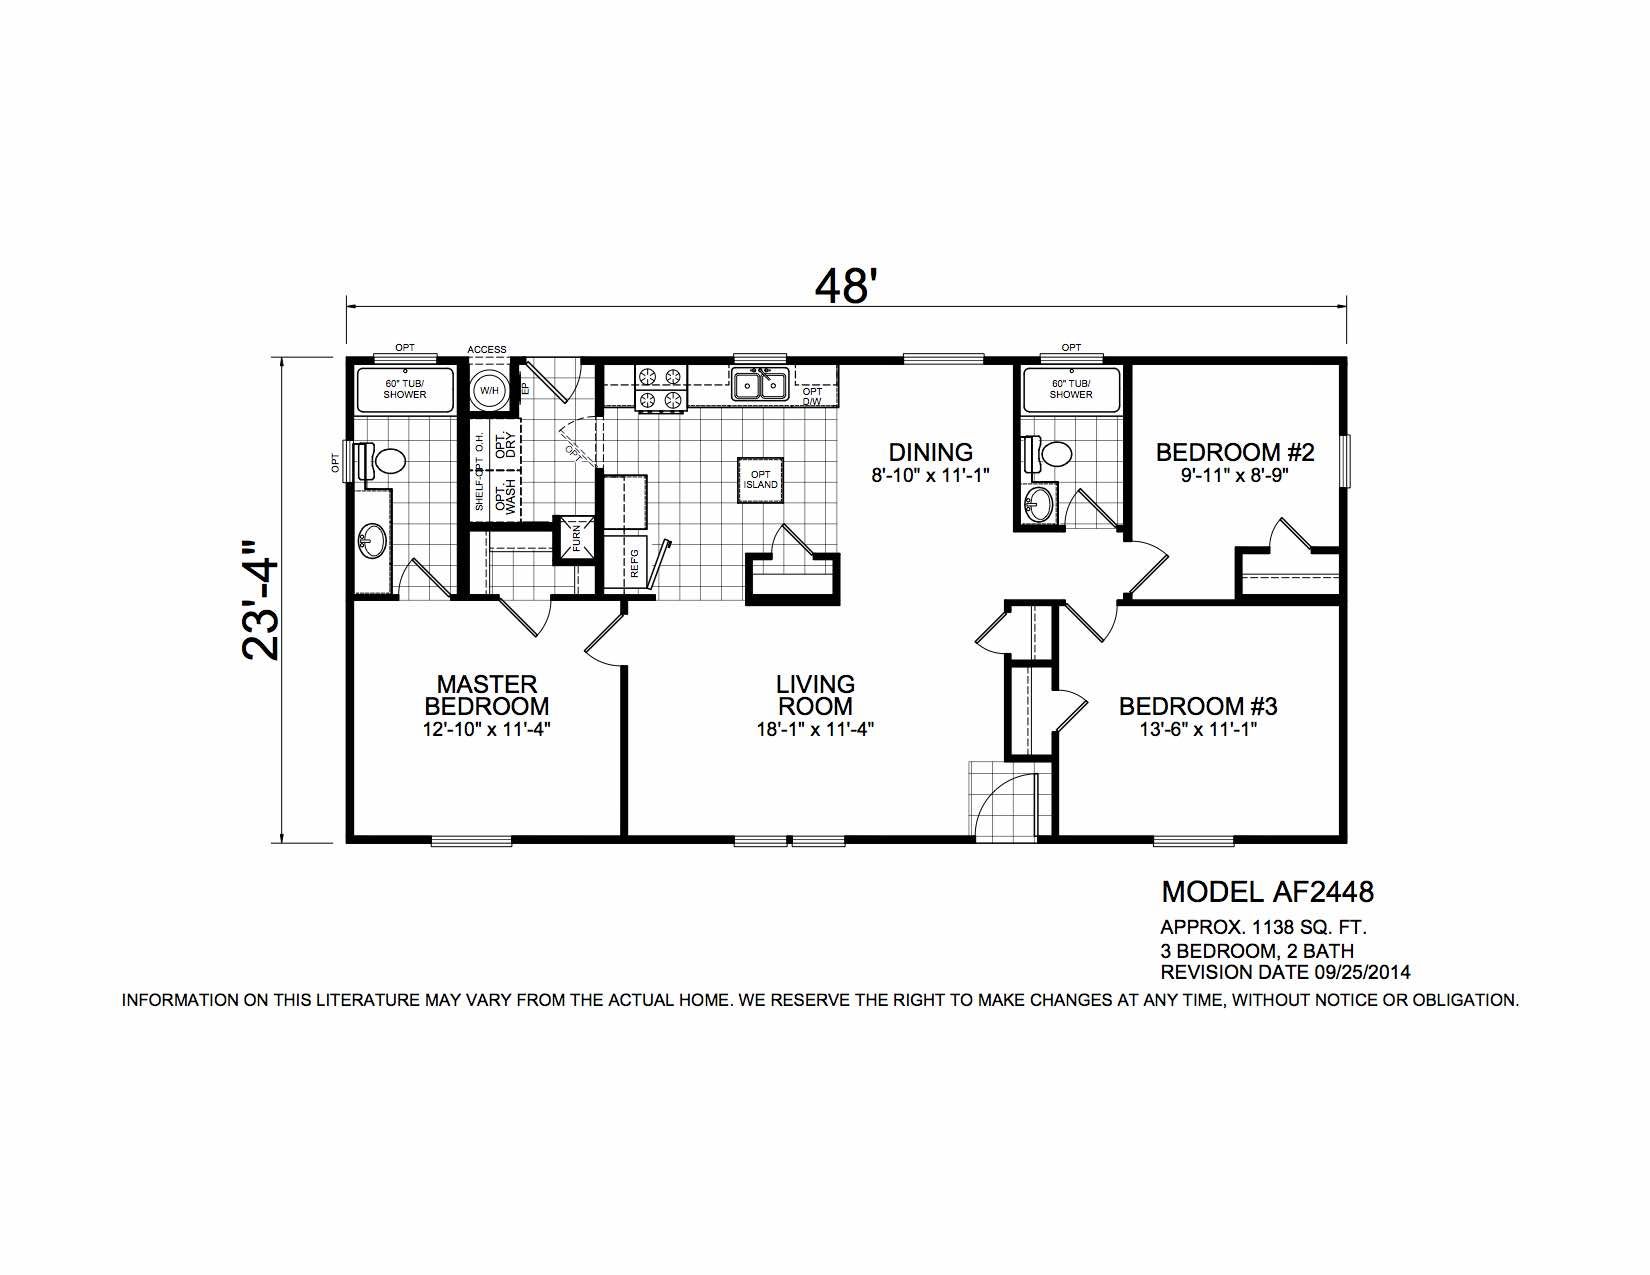 Homes Direct Modular Homes - Model AF2448 - Floorplan